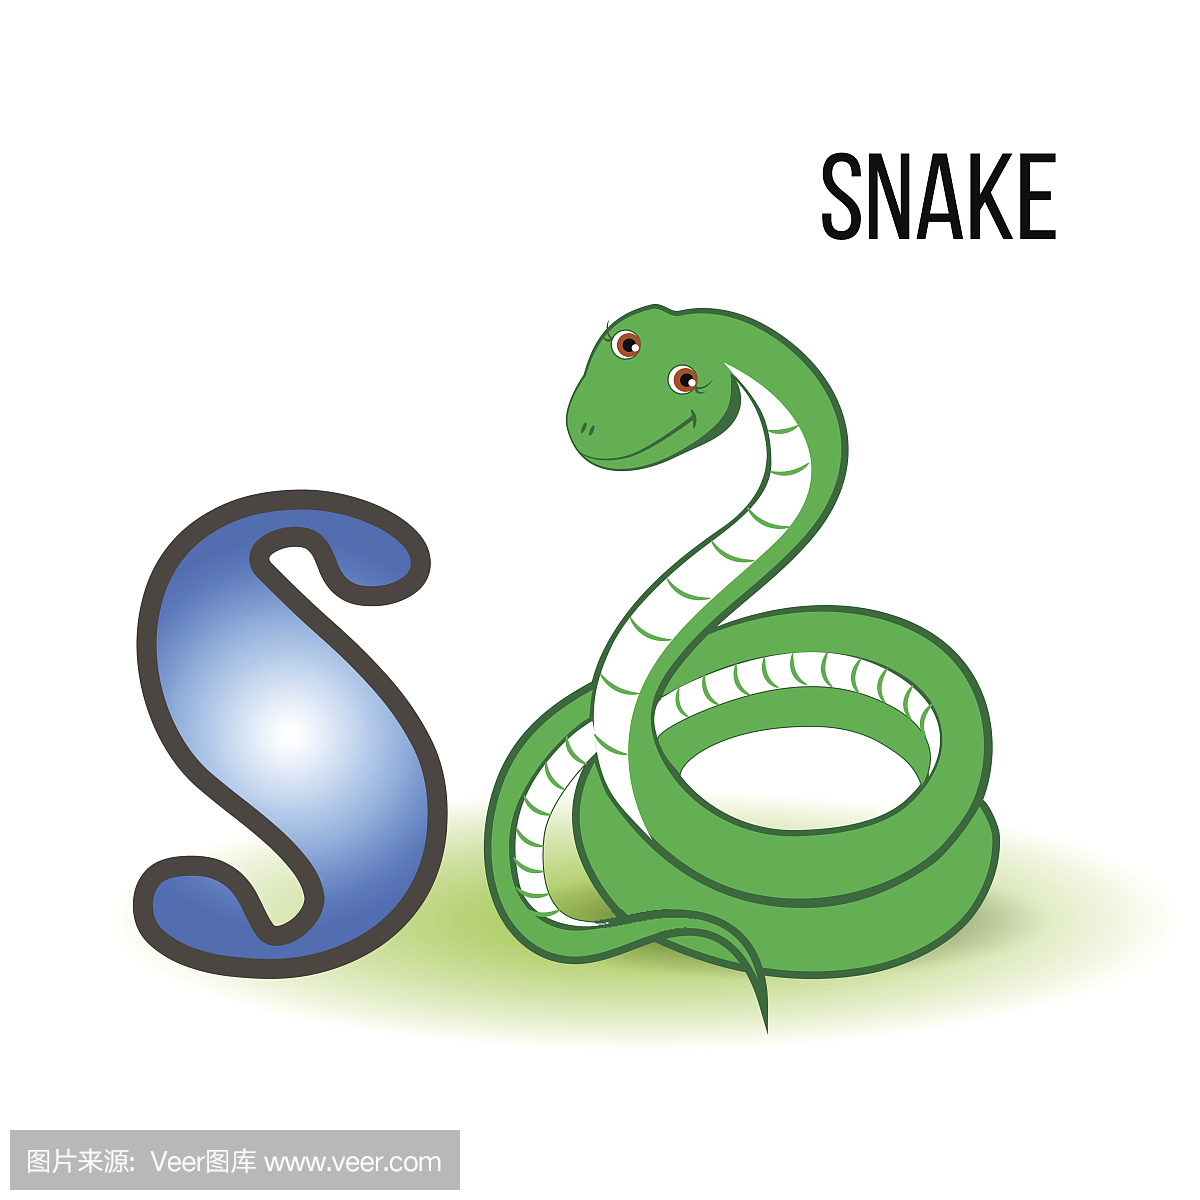 snake 怎么读?